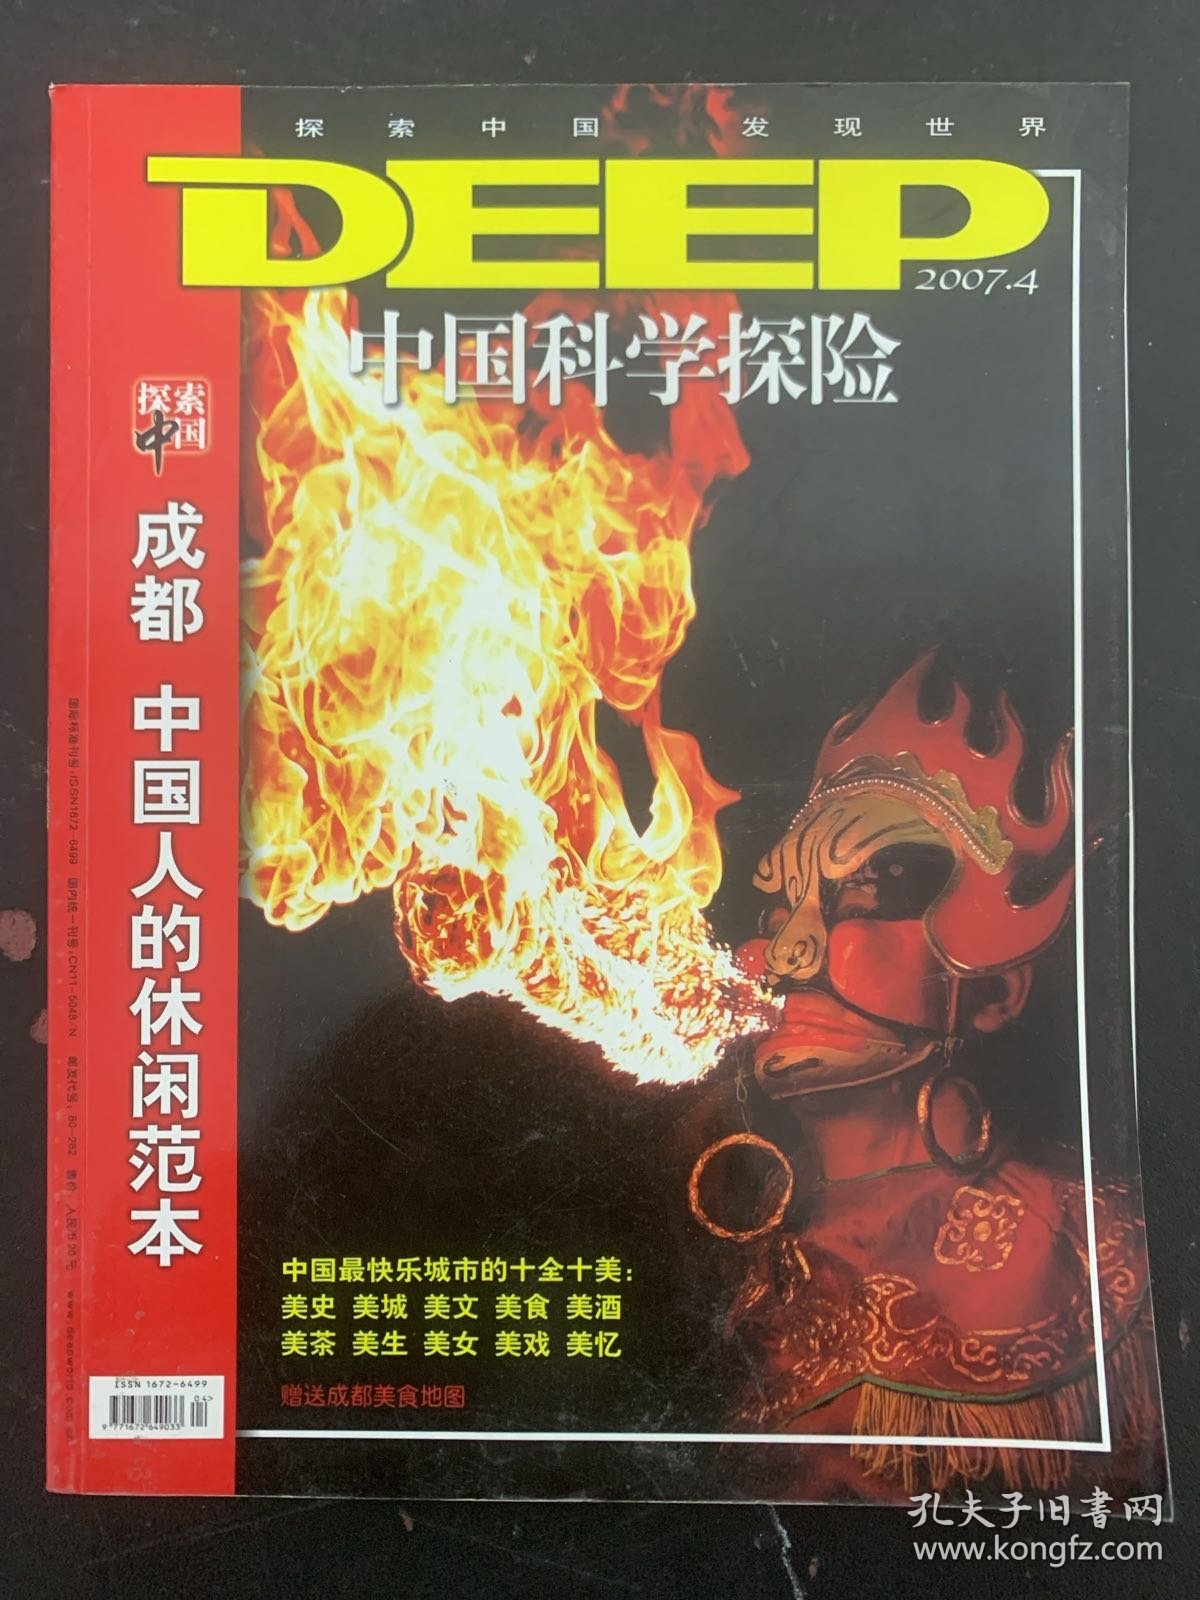 中国科学探险DEEPWORLD 2007年 第4期总第41期 成都-中国人的休闲范本 杂志